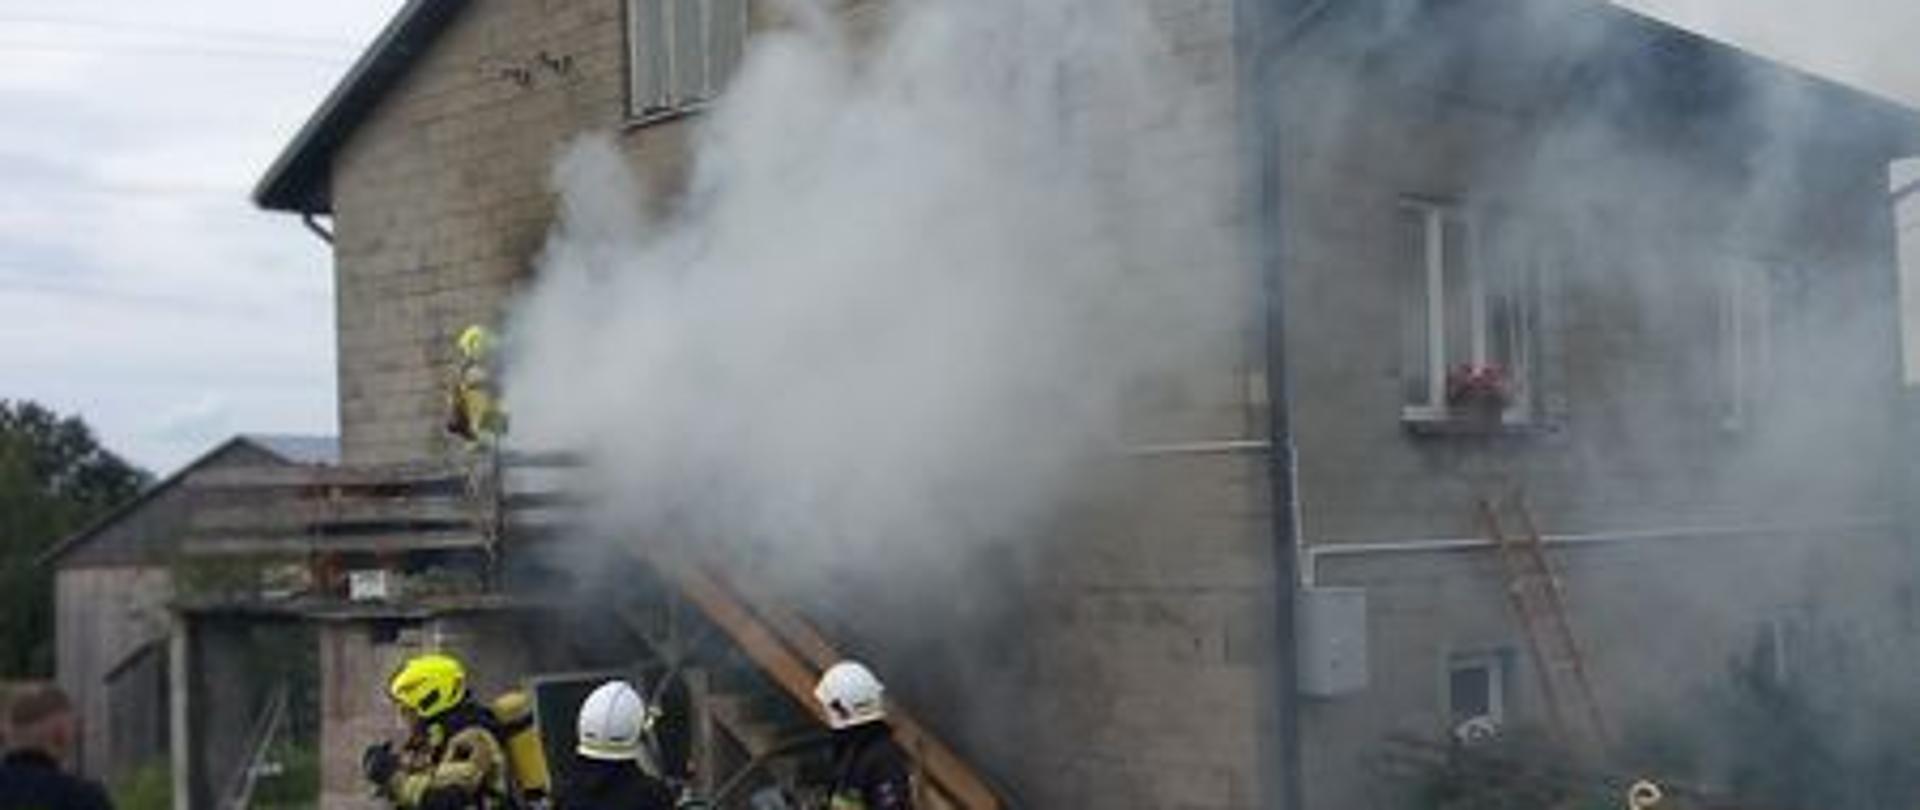 Strażacy w trakcie działań w Kapałowie, trzech przed budynkiem, jeden widoczny na schodach zewnętrznych wchodzi w zadymienie do budynku, z drzwi wydobywa się dużo białego dymu